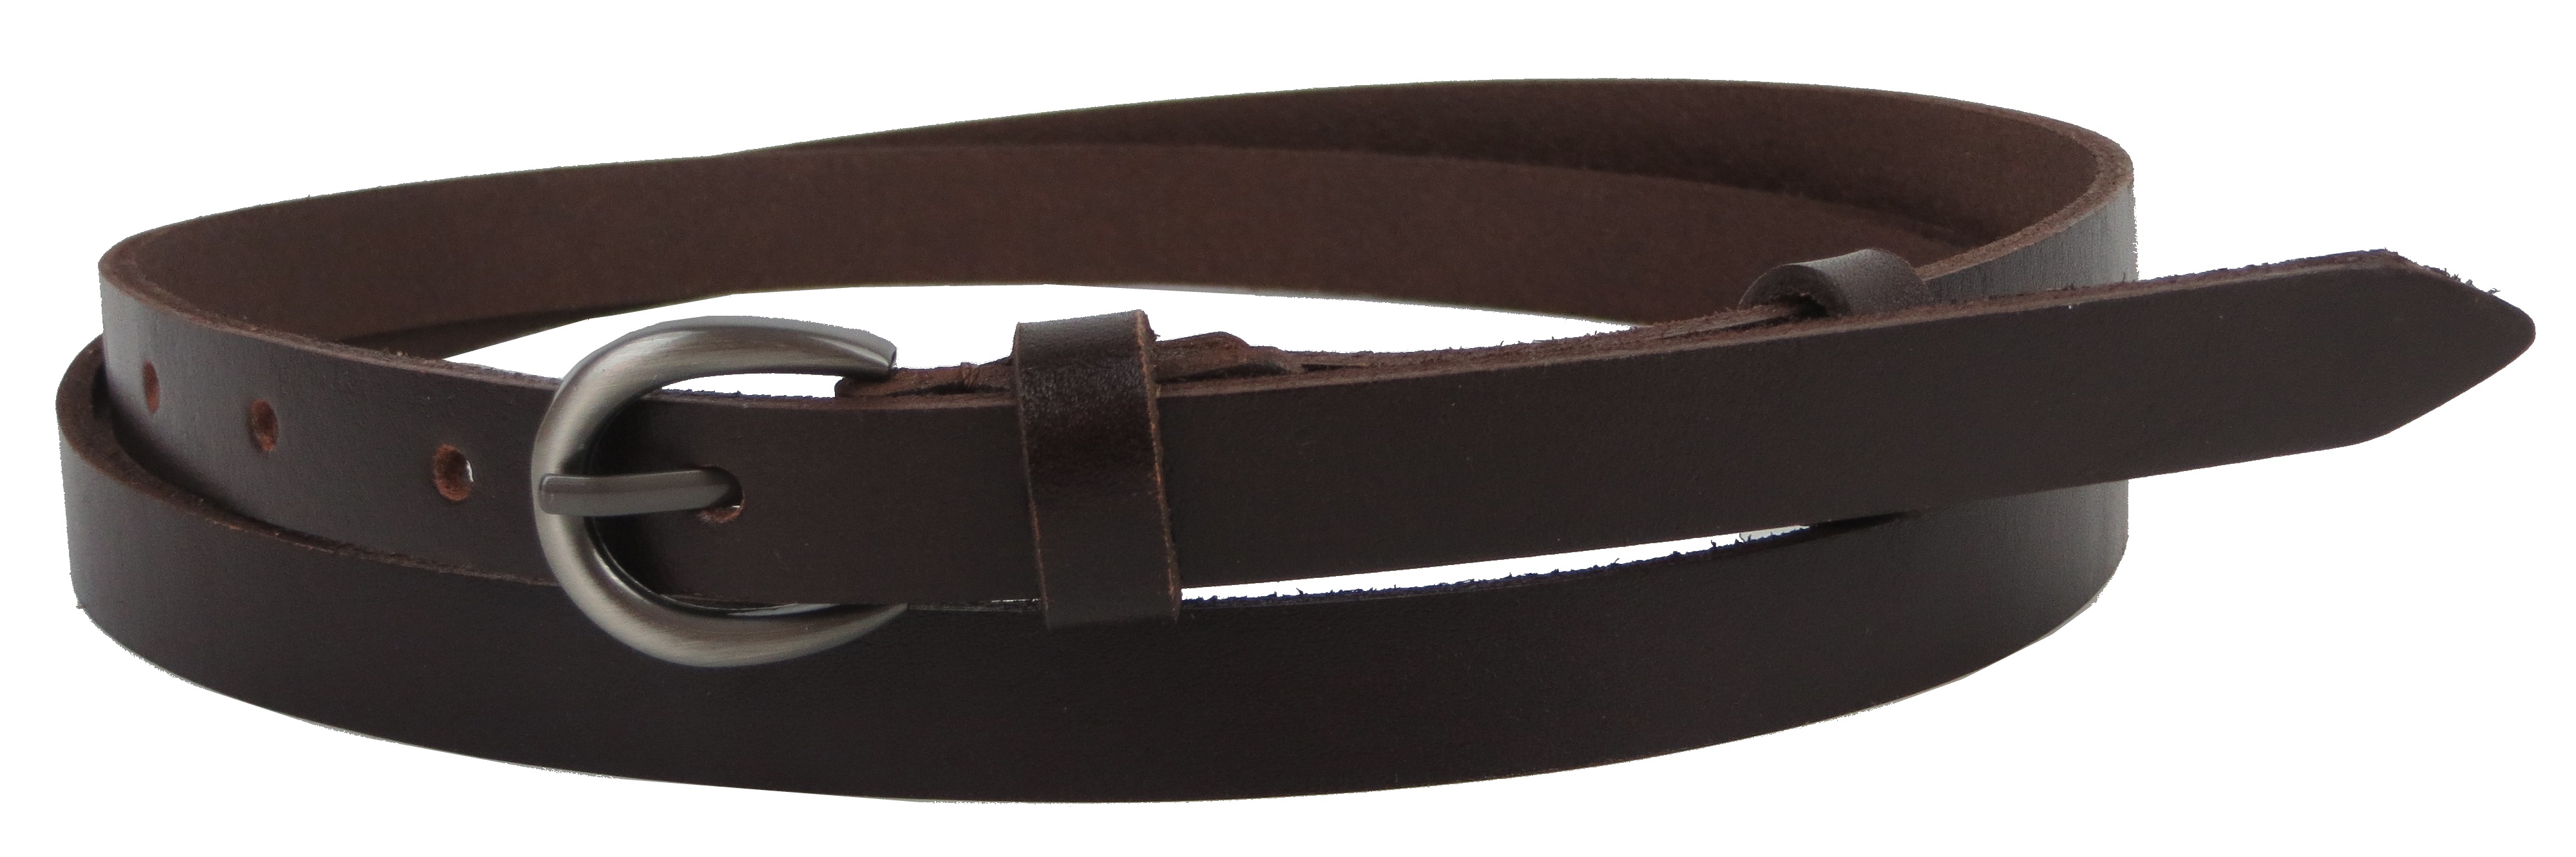 Ремень женский кожаный Skipper 1,5 см Темно-коричневый 1408-15